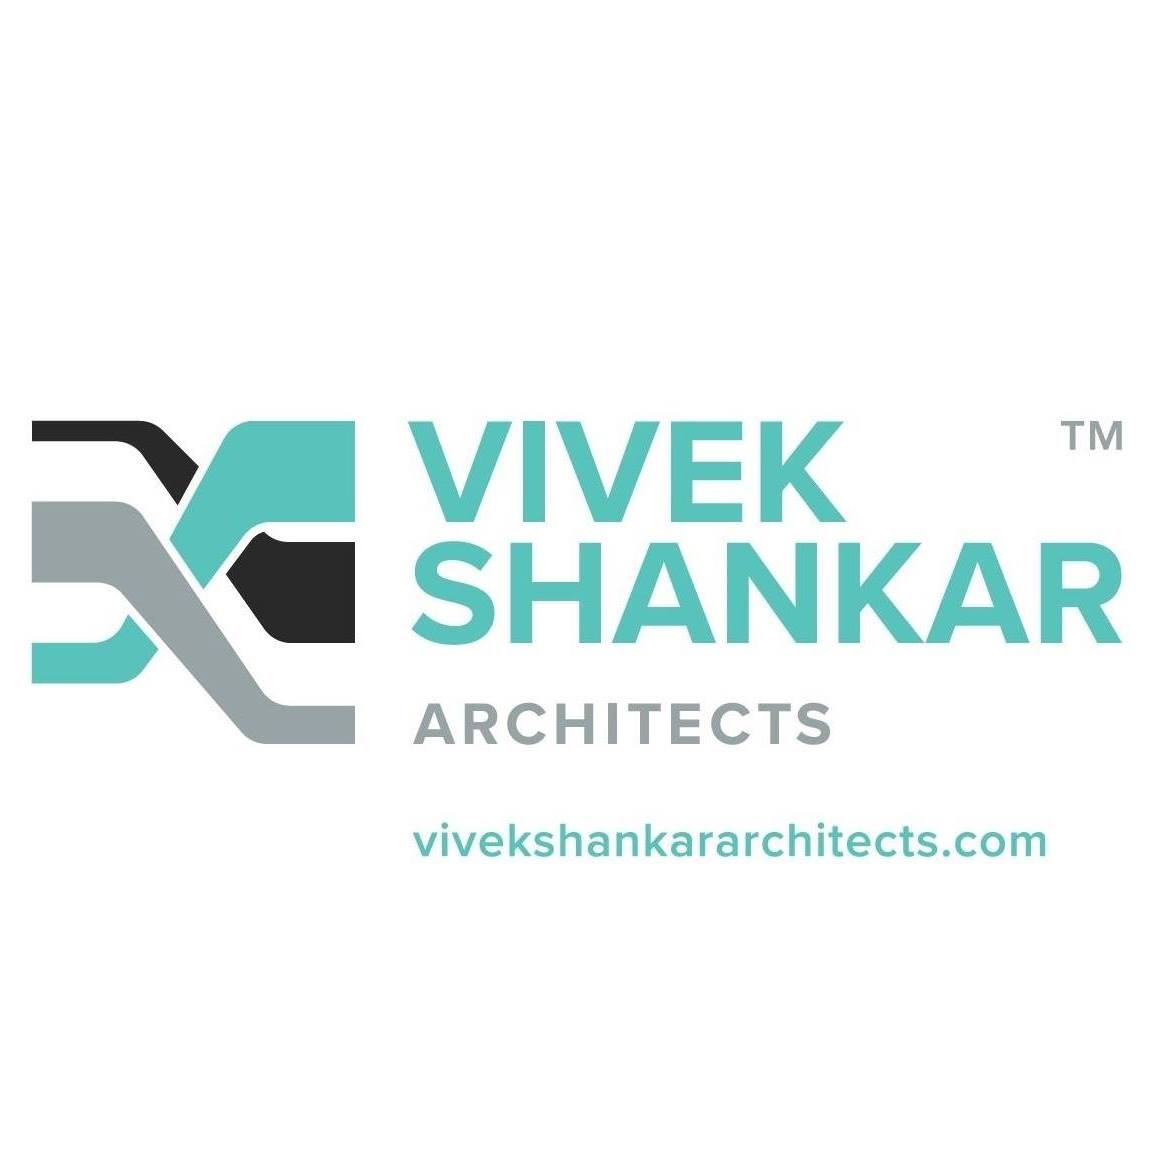 Vivek Shankar Architects ( formerly VSDP )|Architect|Professional Services